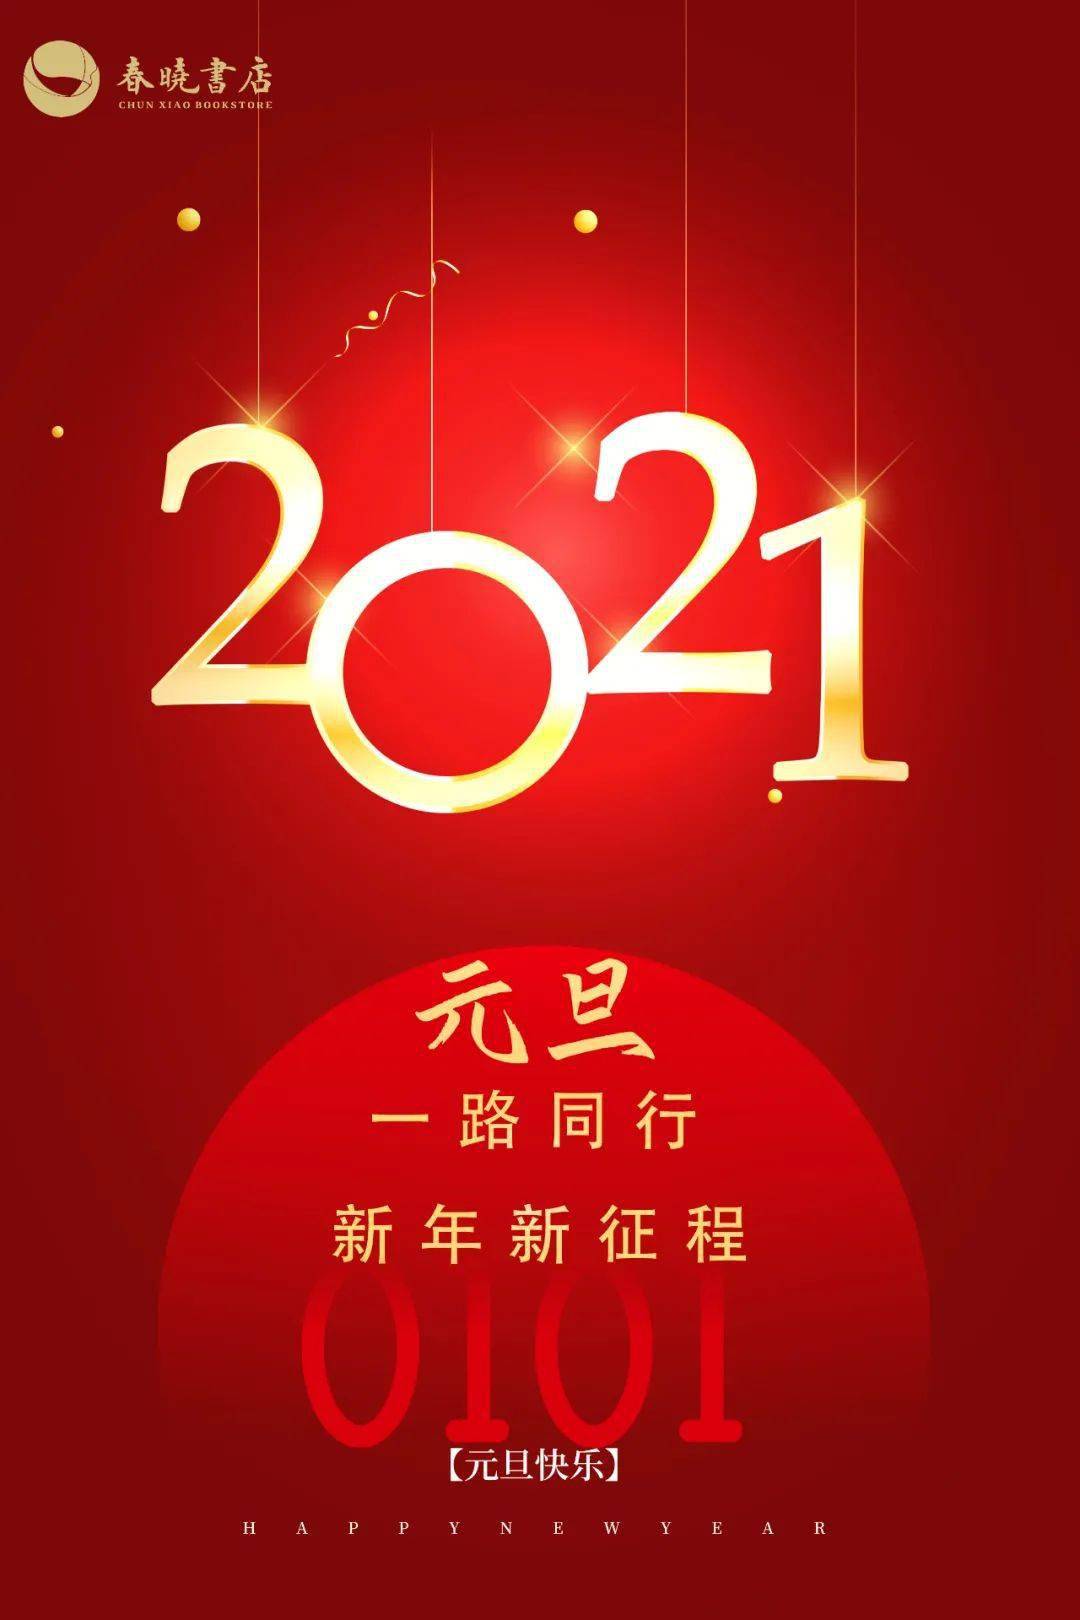 【新年快乐】2021年新年贺词